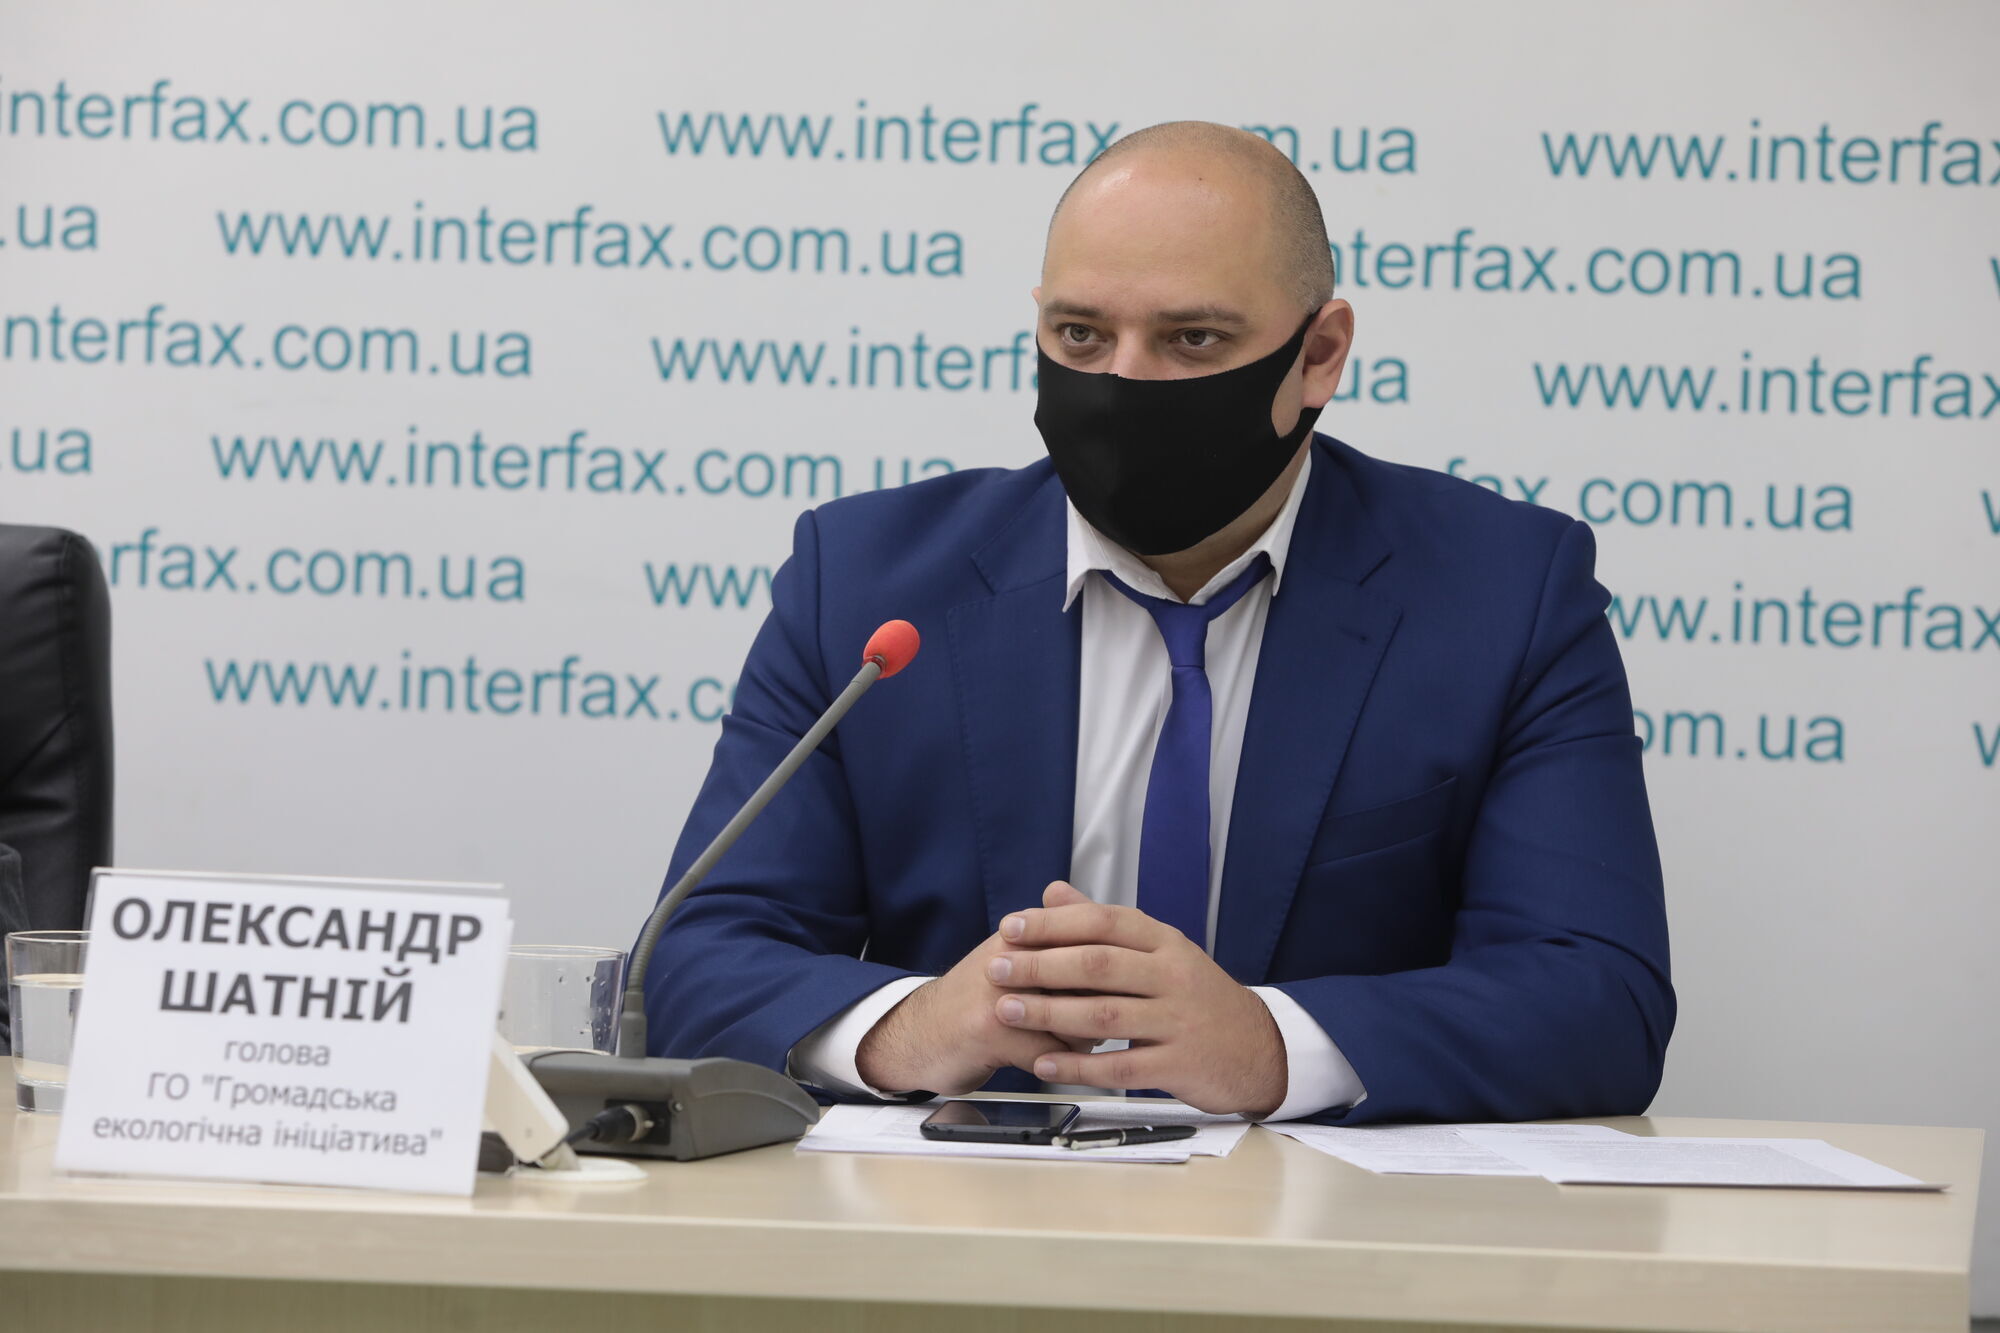 Александр Шатный на пресс-конференции